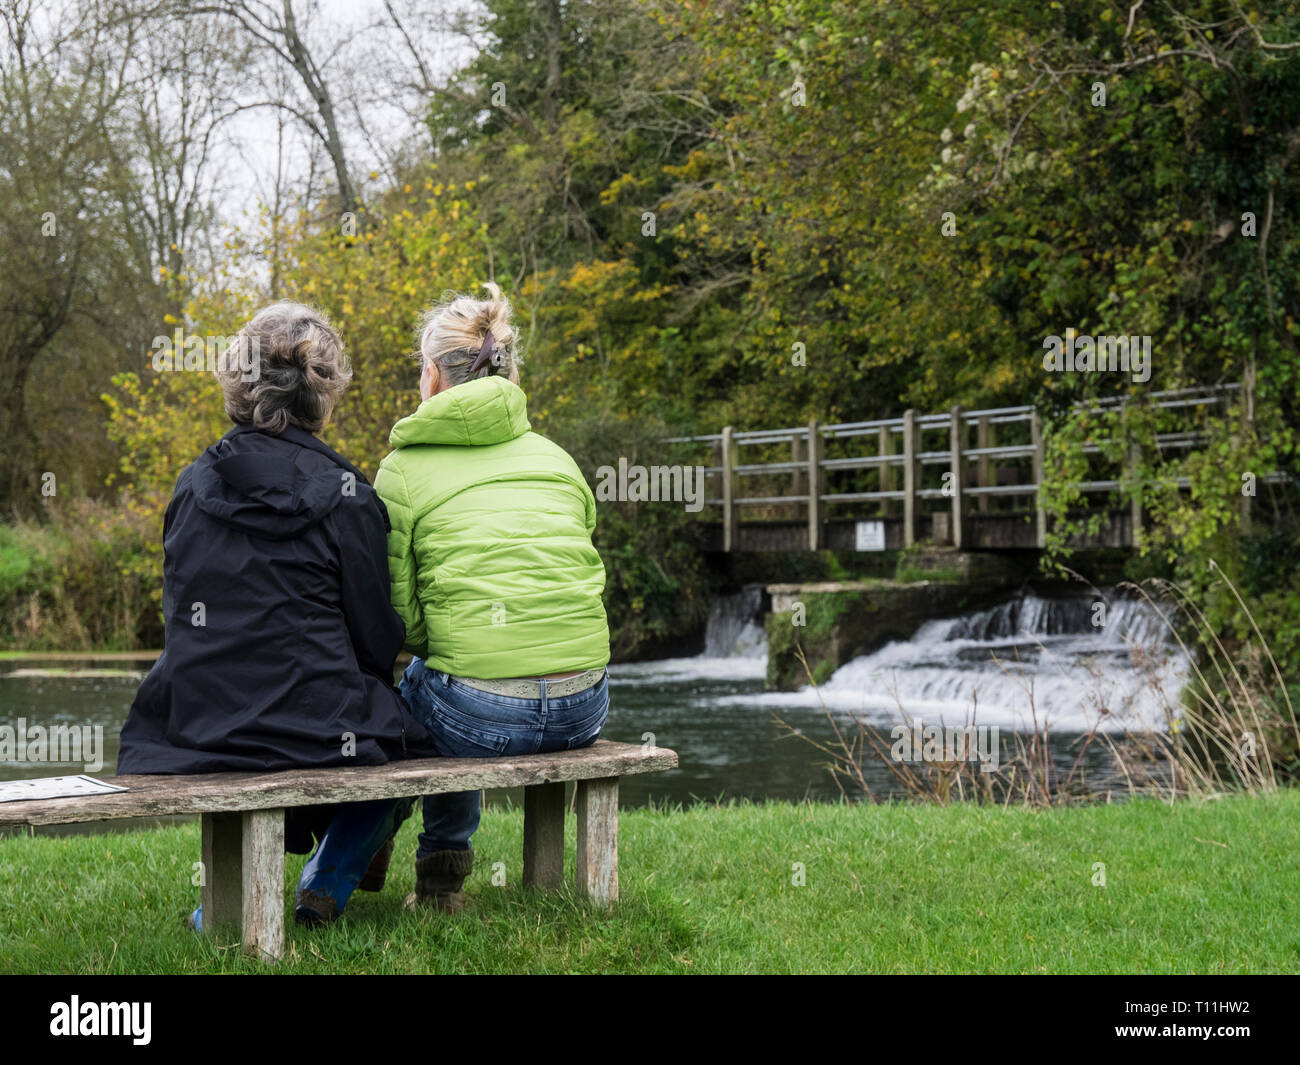 Vue arrière d'une mère et sa fille chat portant des vestes, assis sur un banc au bord d'une petite cascade et Weir en arrière-plan Banque D'Images